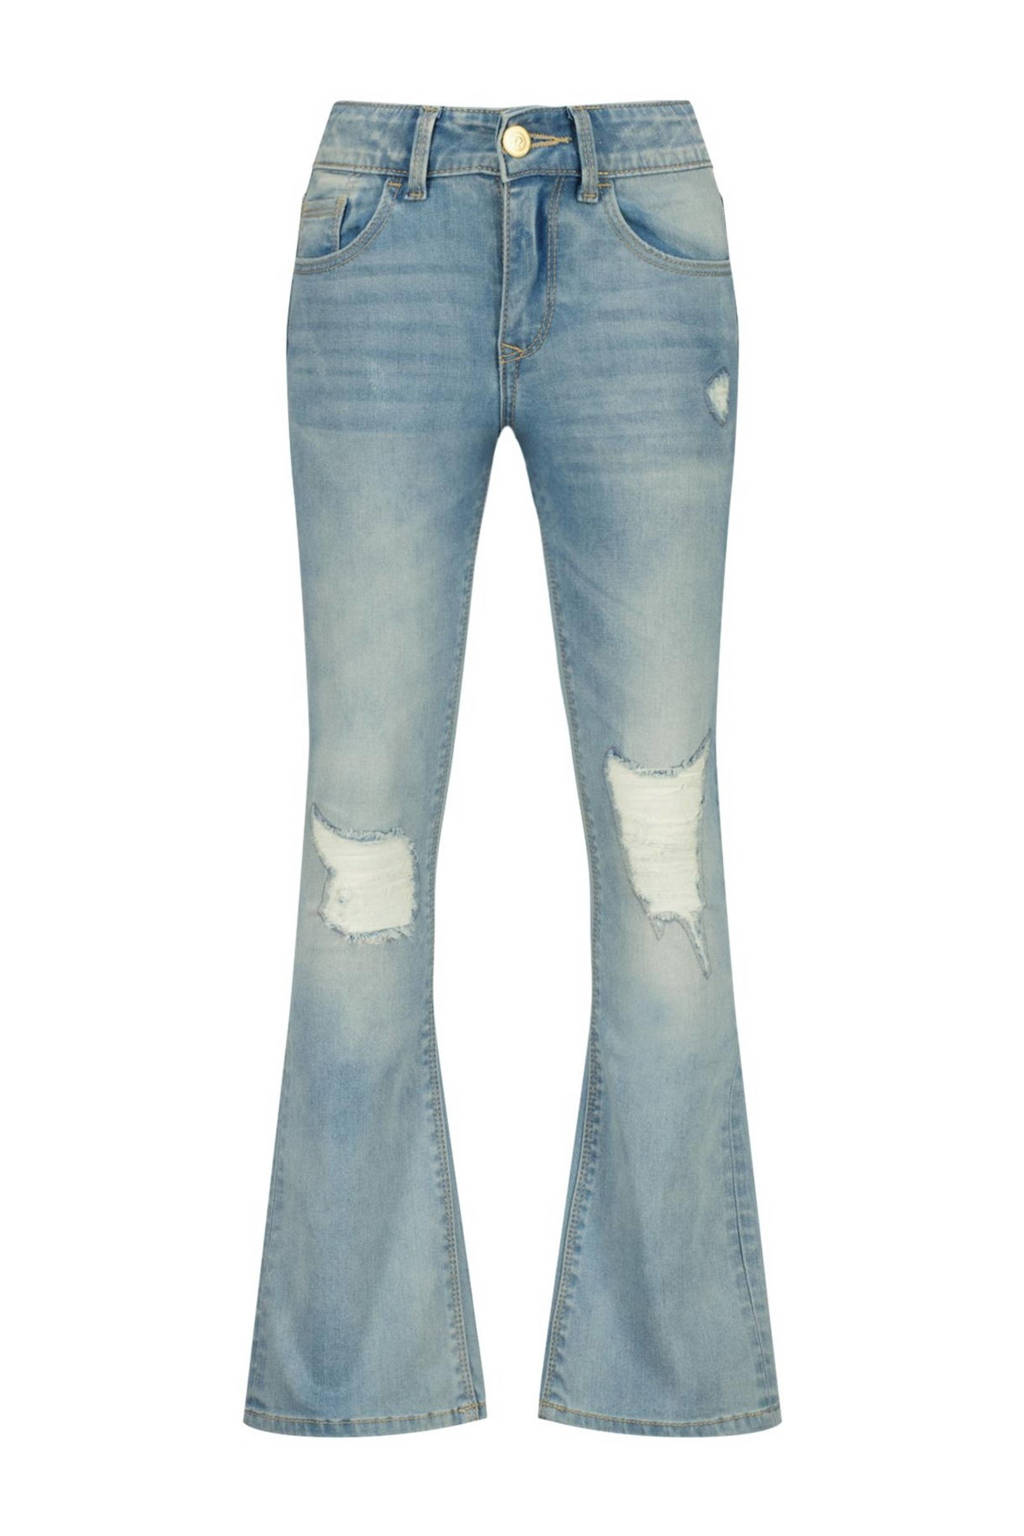 flared jeans Melbourne Crafted met slijtage light blue stone